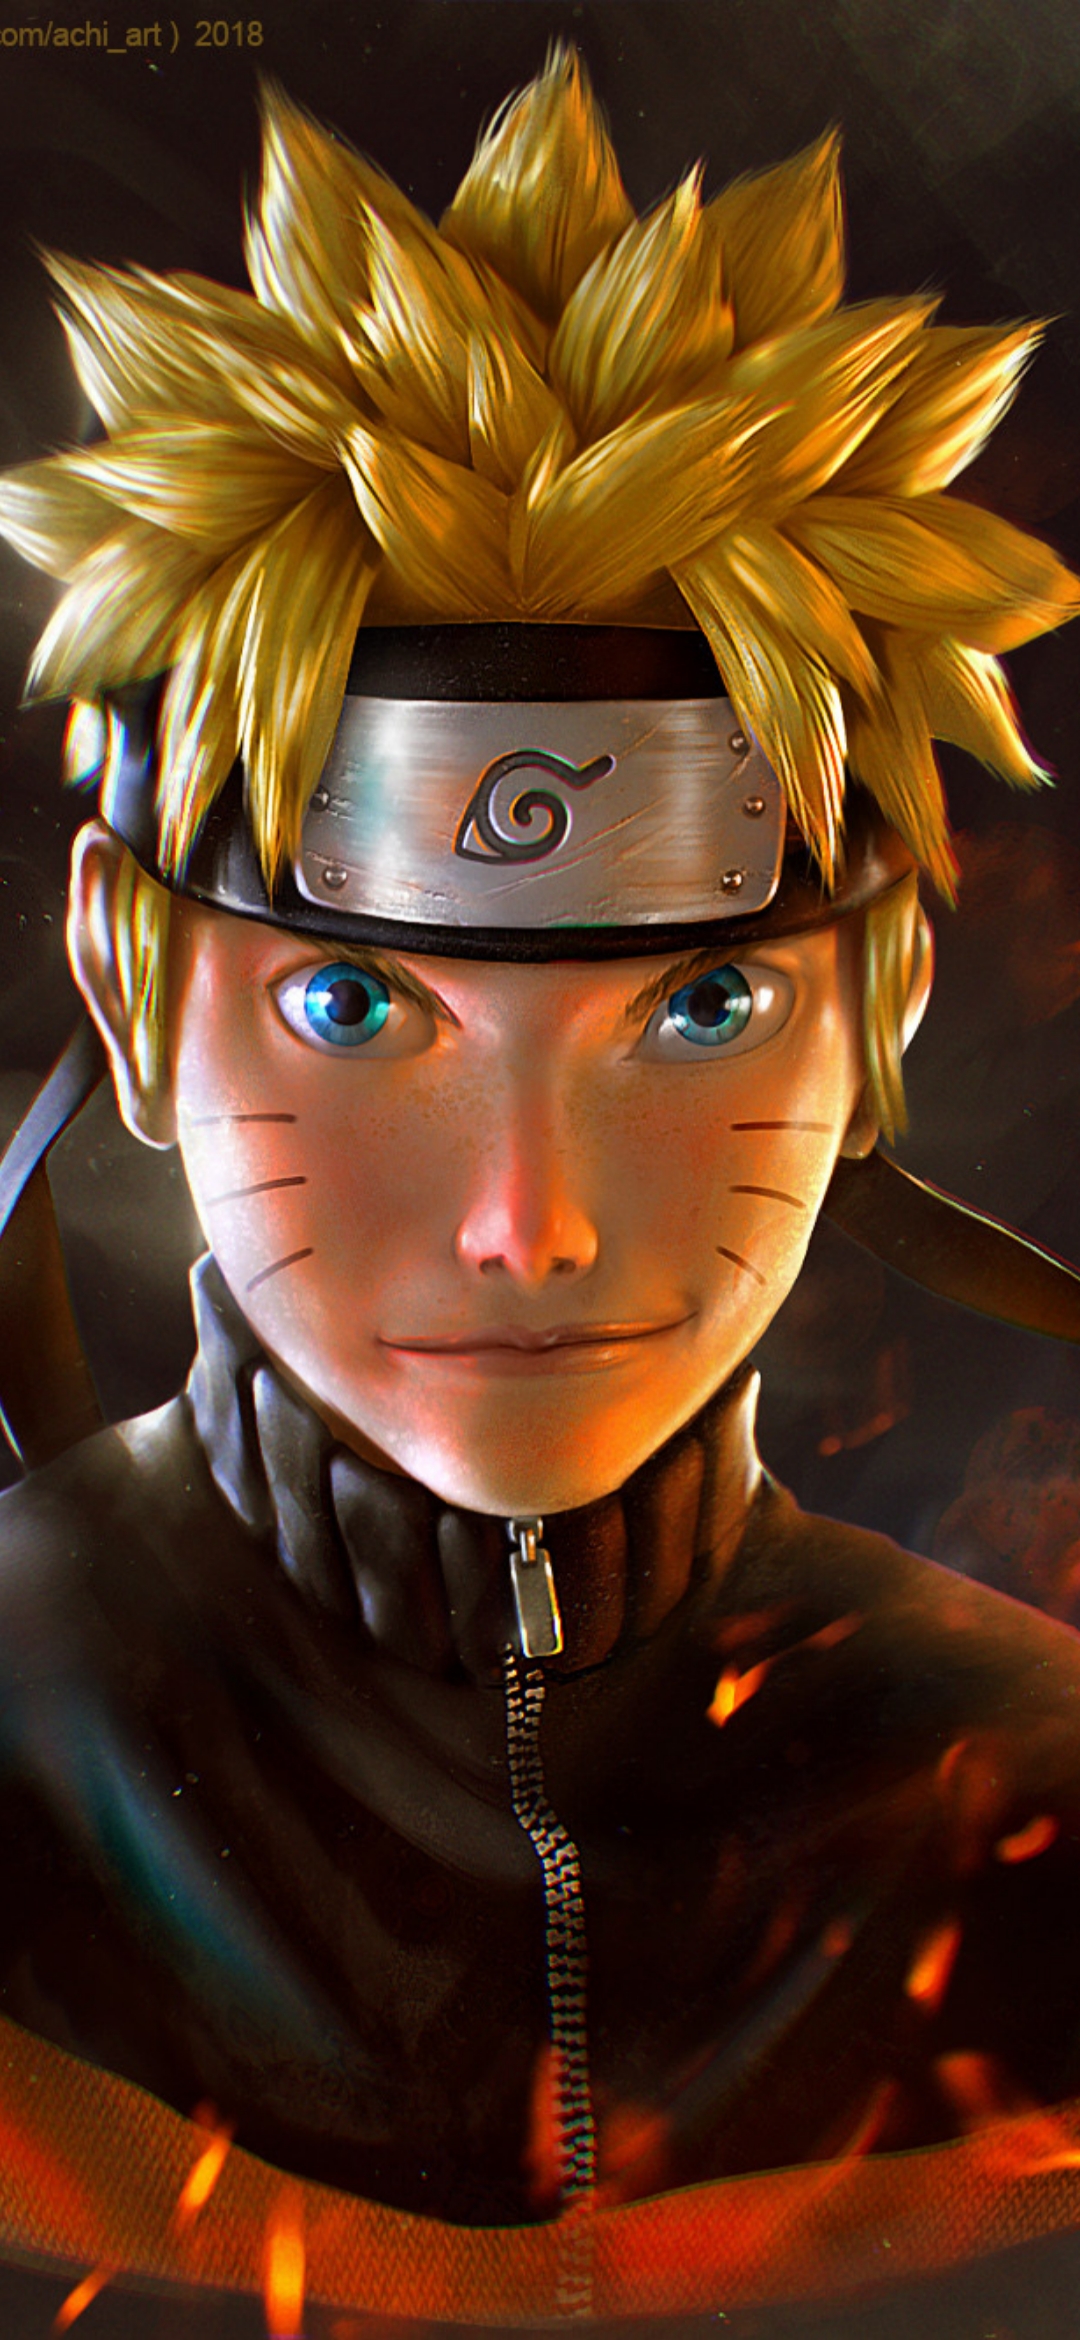 Thế giới của Naruto không chỉ là những cuộc phiêu lưu đầy mạo hiểm mà còn là nguồn cảm hứng vô tận cho các bạn trẻ. Và những bức hình nền Naruto chất lượng này sẽ giúp bạn tạo ra một không gian làm việc và học tập đầy sáng tạo. Với bầu không khí đậm chất Naruto, bạn sẽ có thêm động lực để chinh phục mọi thử thách trong cuộc sống.